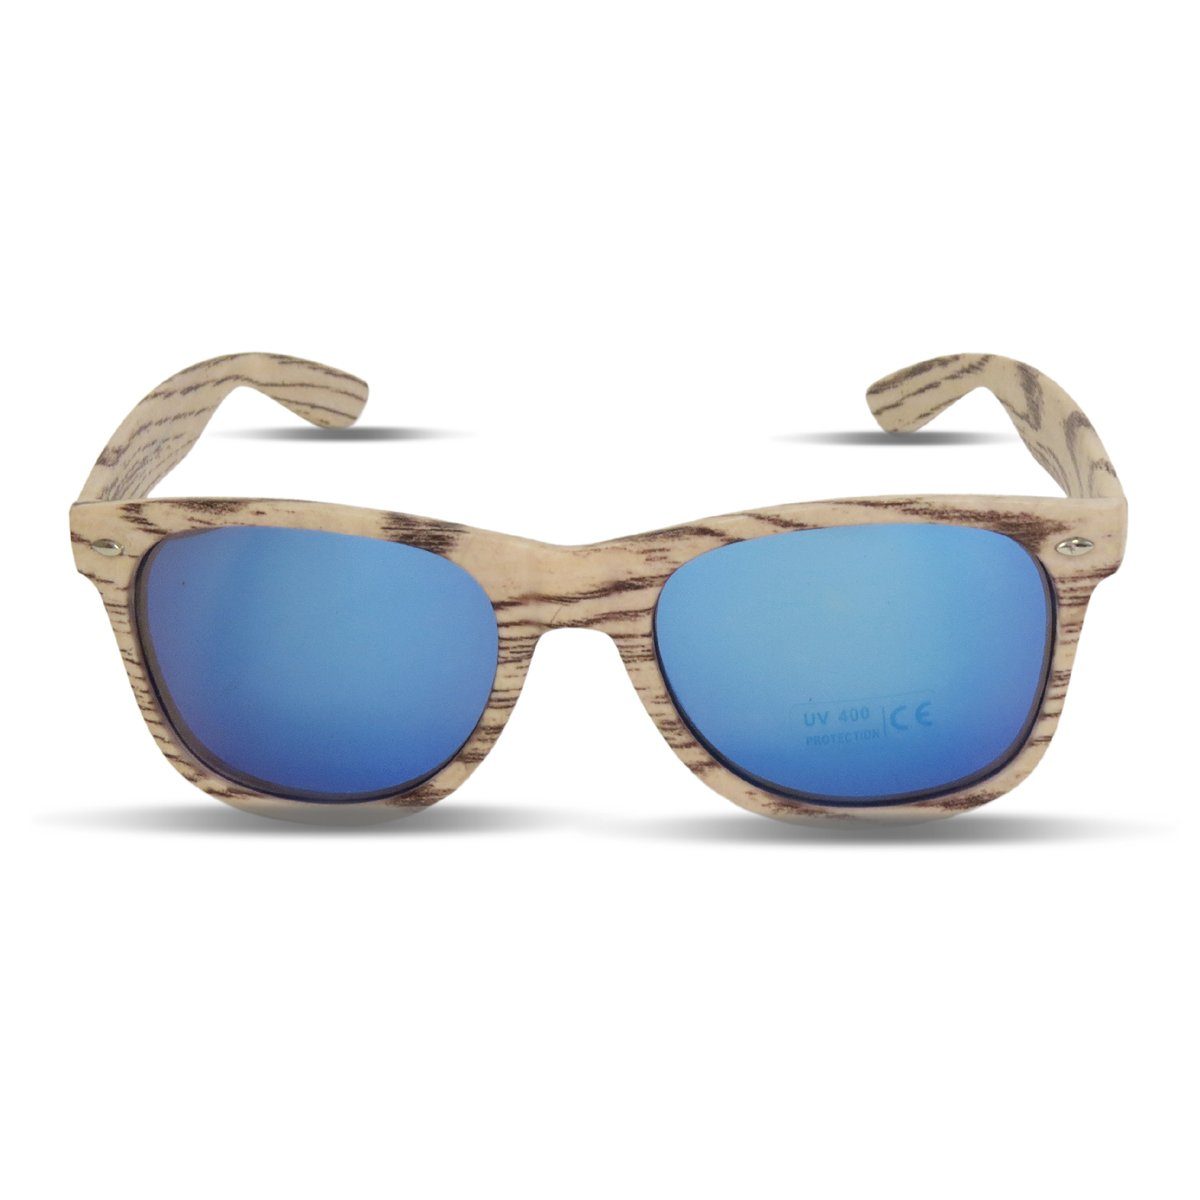 Sonia Originelli Sonnenbrille Sonnenbrille "Wooden Classic" Verspiegelt Brille Sommer Onesize grau